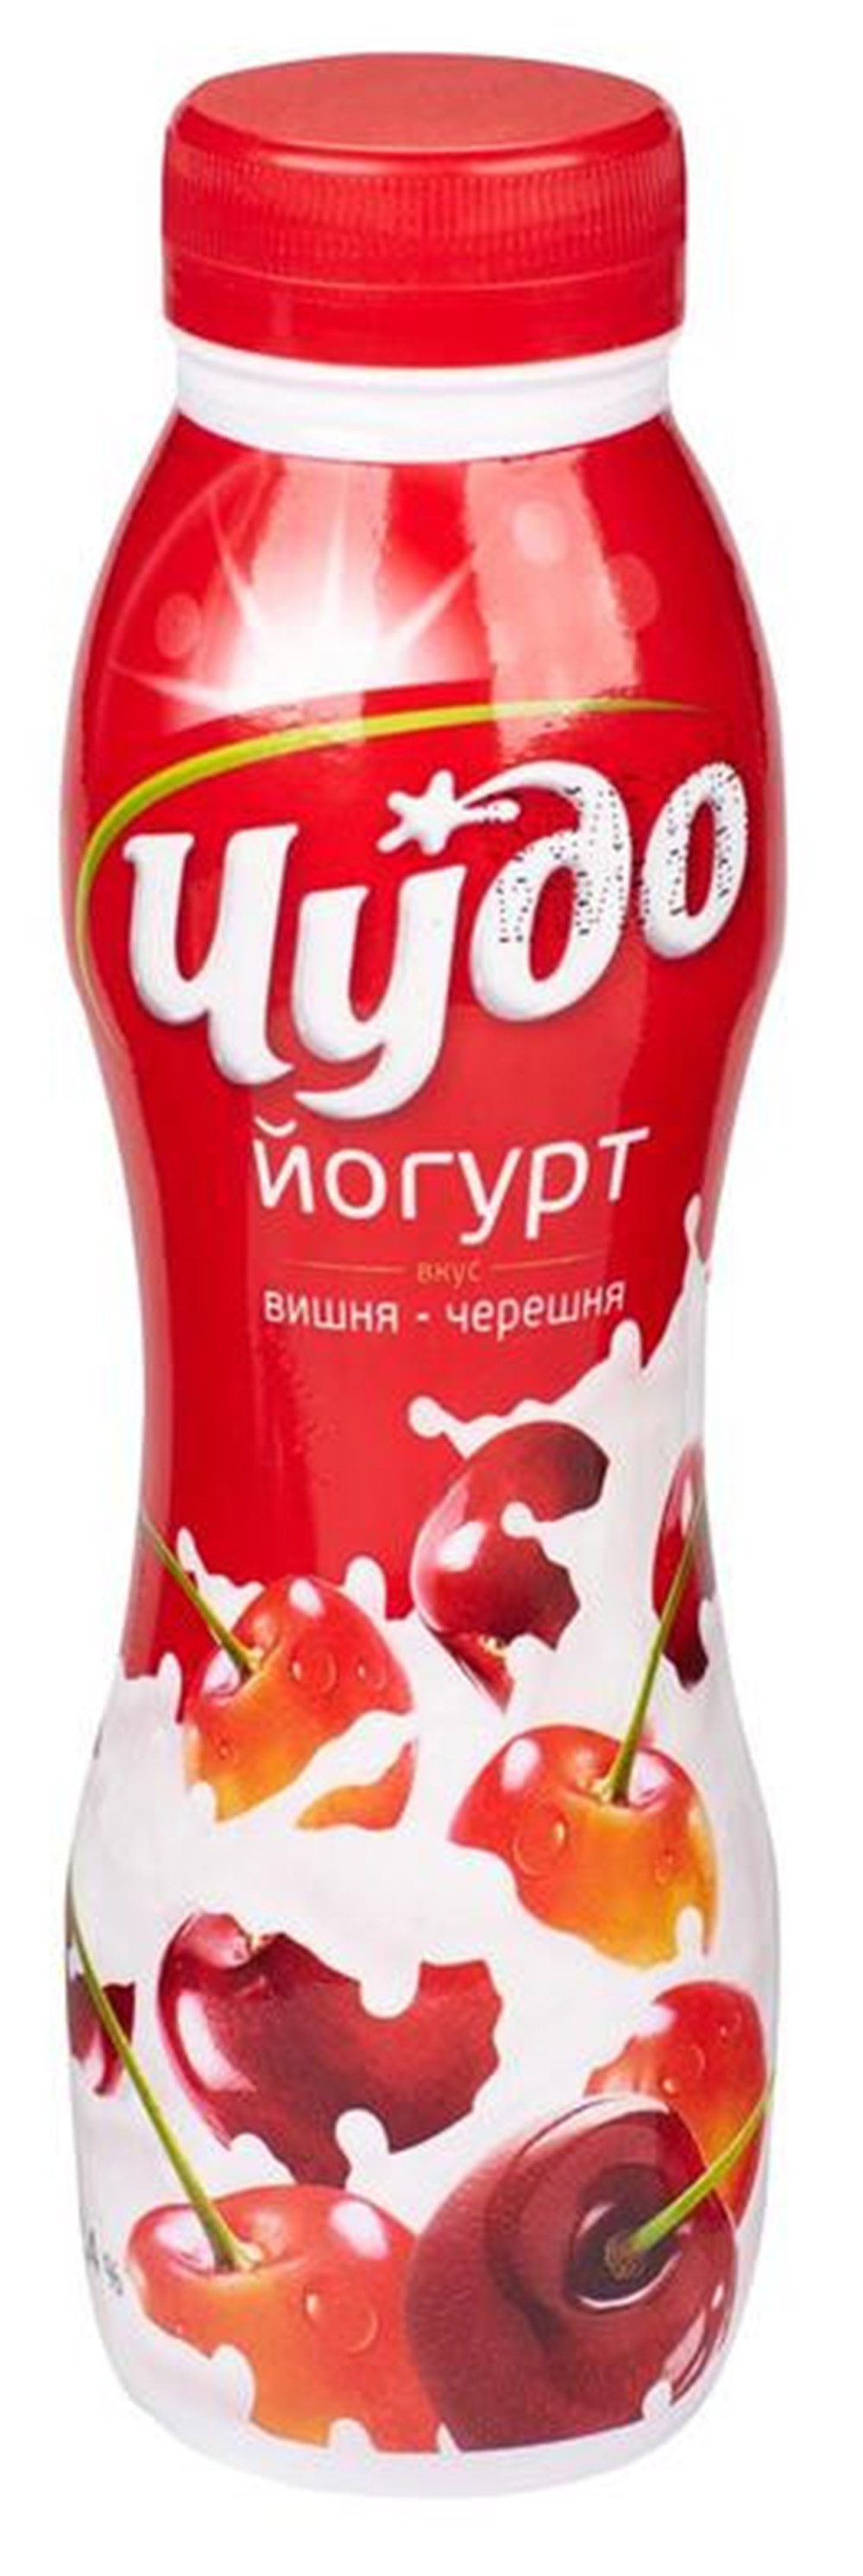 Йогурт 2.4%-3.2% Чудо питьевой вишня-черешня  Лианозово  260-270г бут - интернет-магазин Близнецы